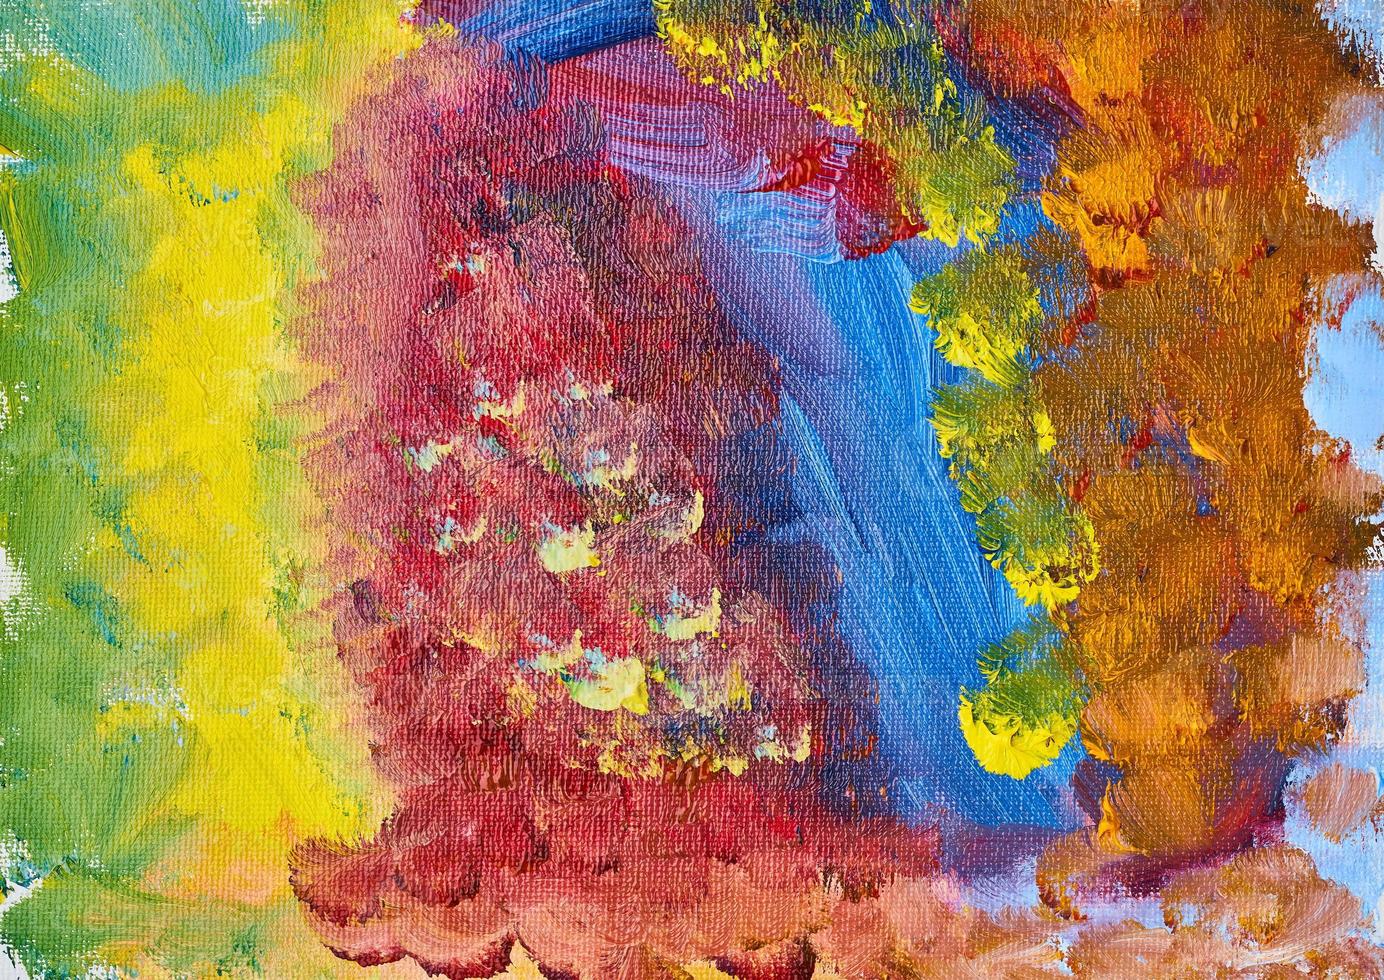 peinture d'action. photo de peinture abstraite grunge, papier peint coloré fait main